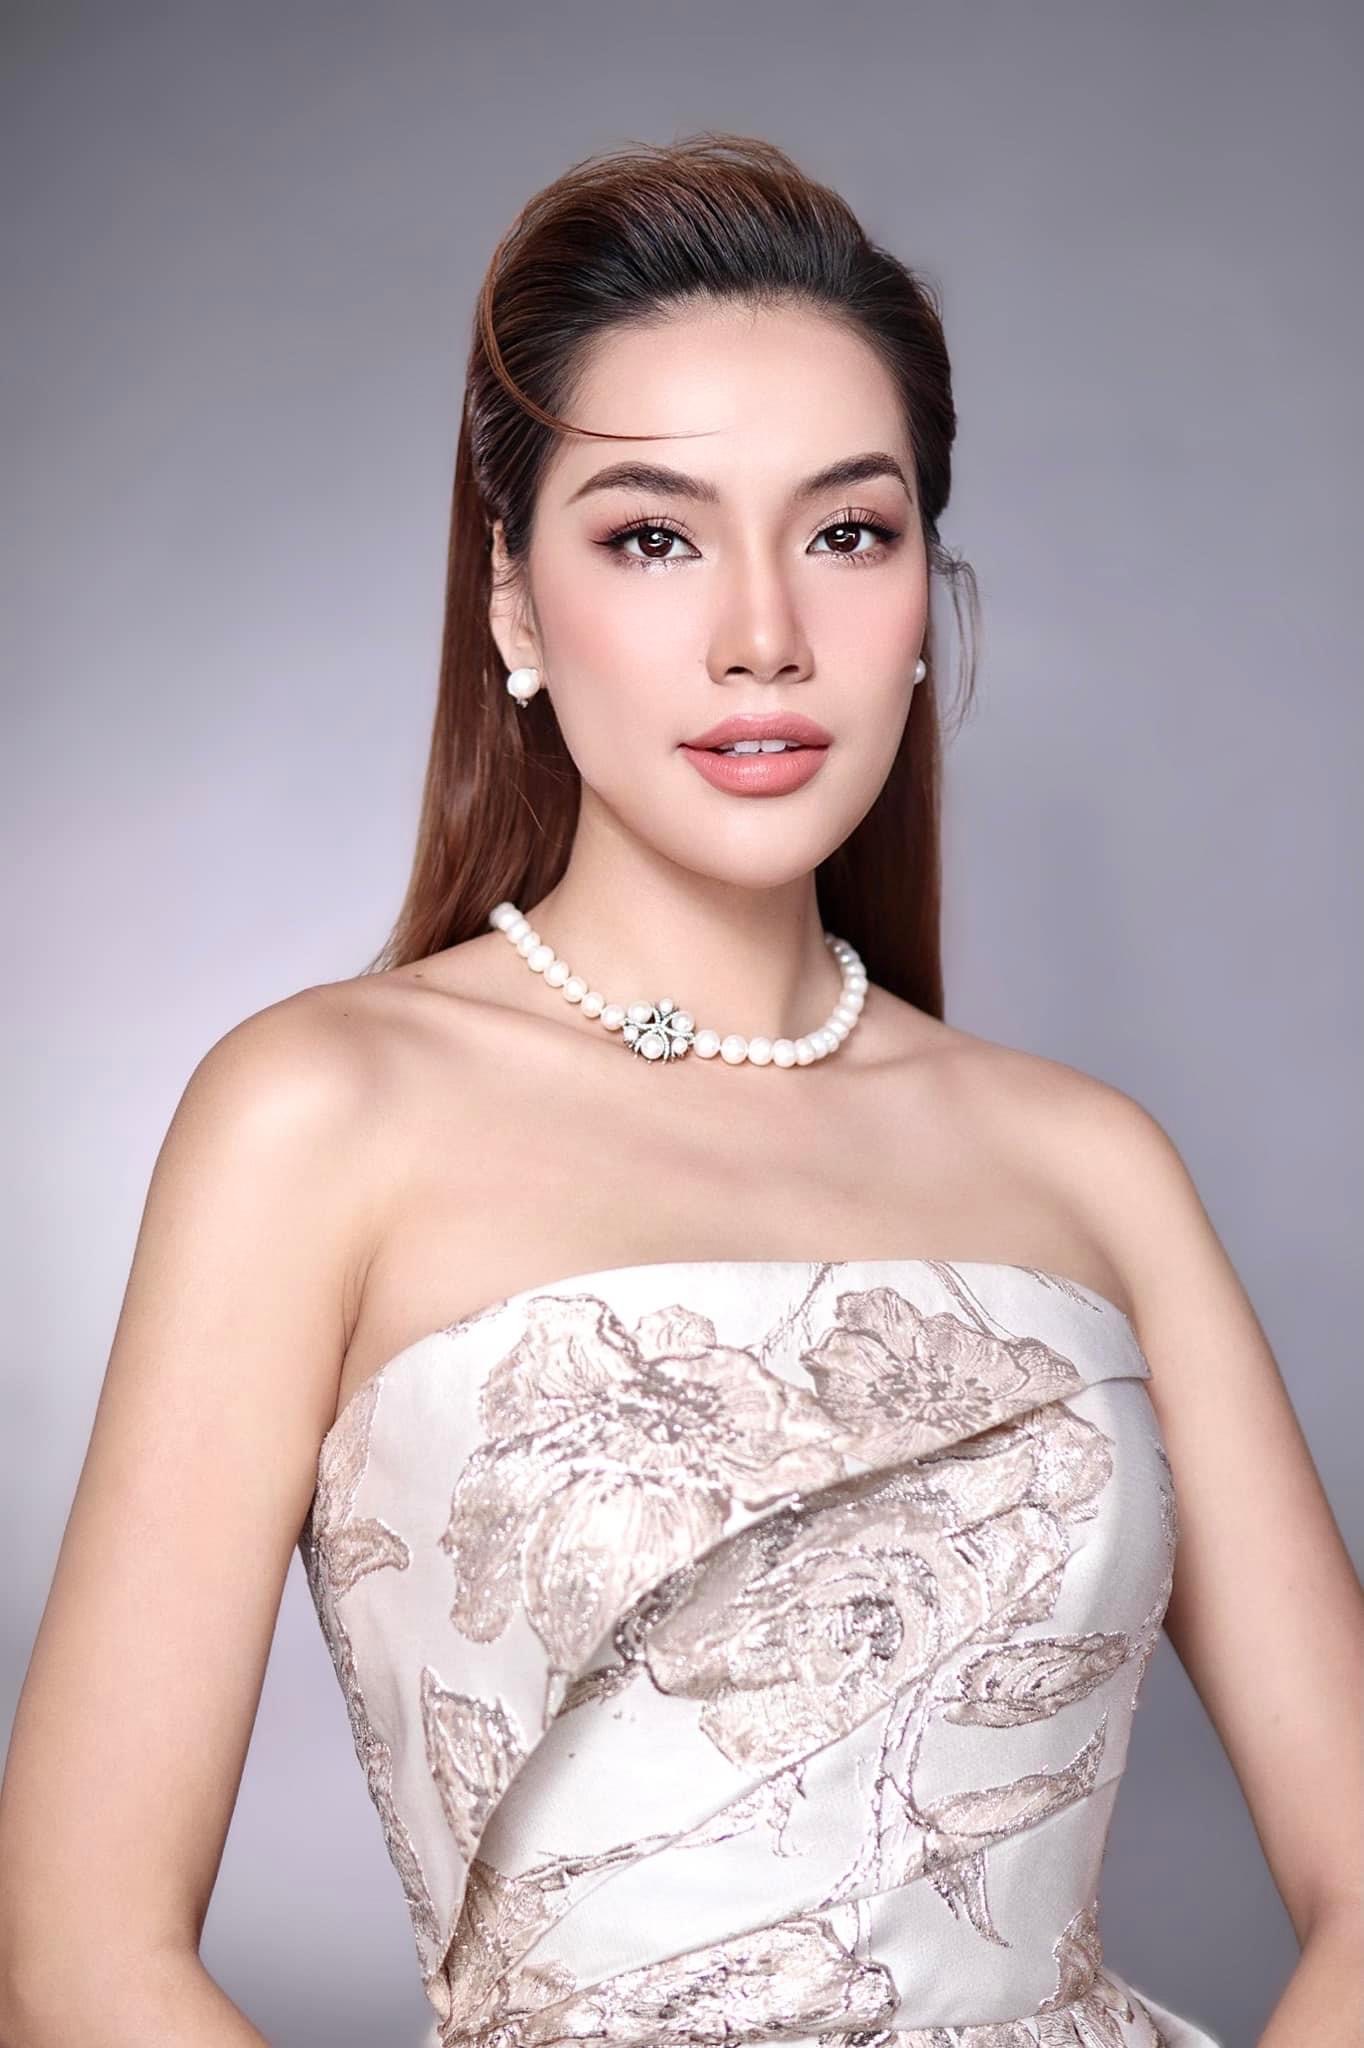 Pro5 của Tân Hoa hậu Lê Hoàng Phương: 2 lần ghi danh cuộc thi nhan sắc, cái tên quen thuộc của làng thời trang - Ảnh 7.